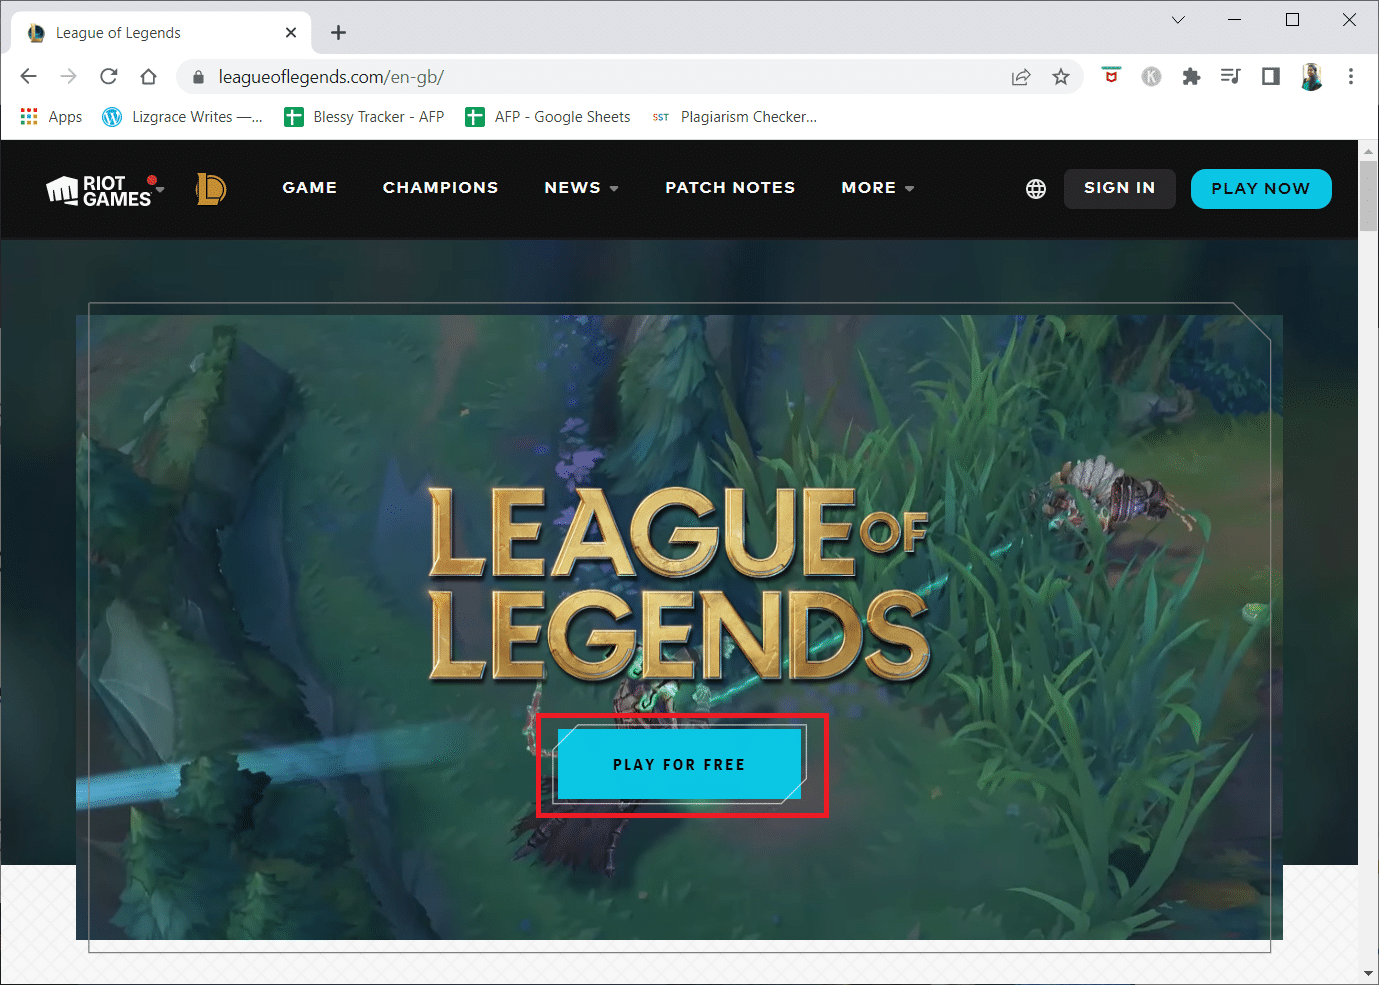 visite la página de descarga del sitio web oficial de League of Legends y haga clic en el botón JUGAR GRATIS